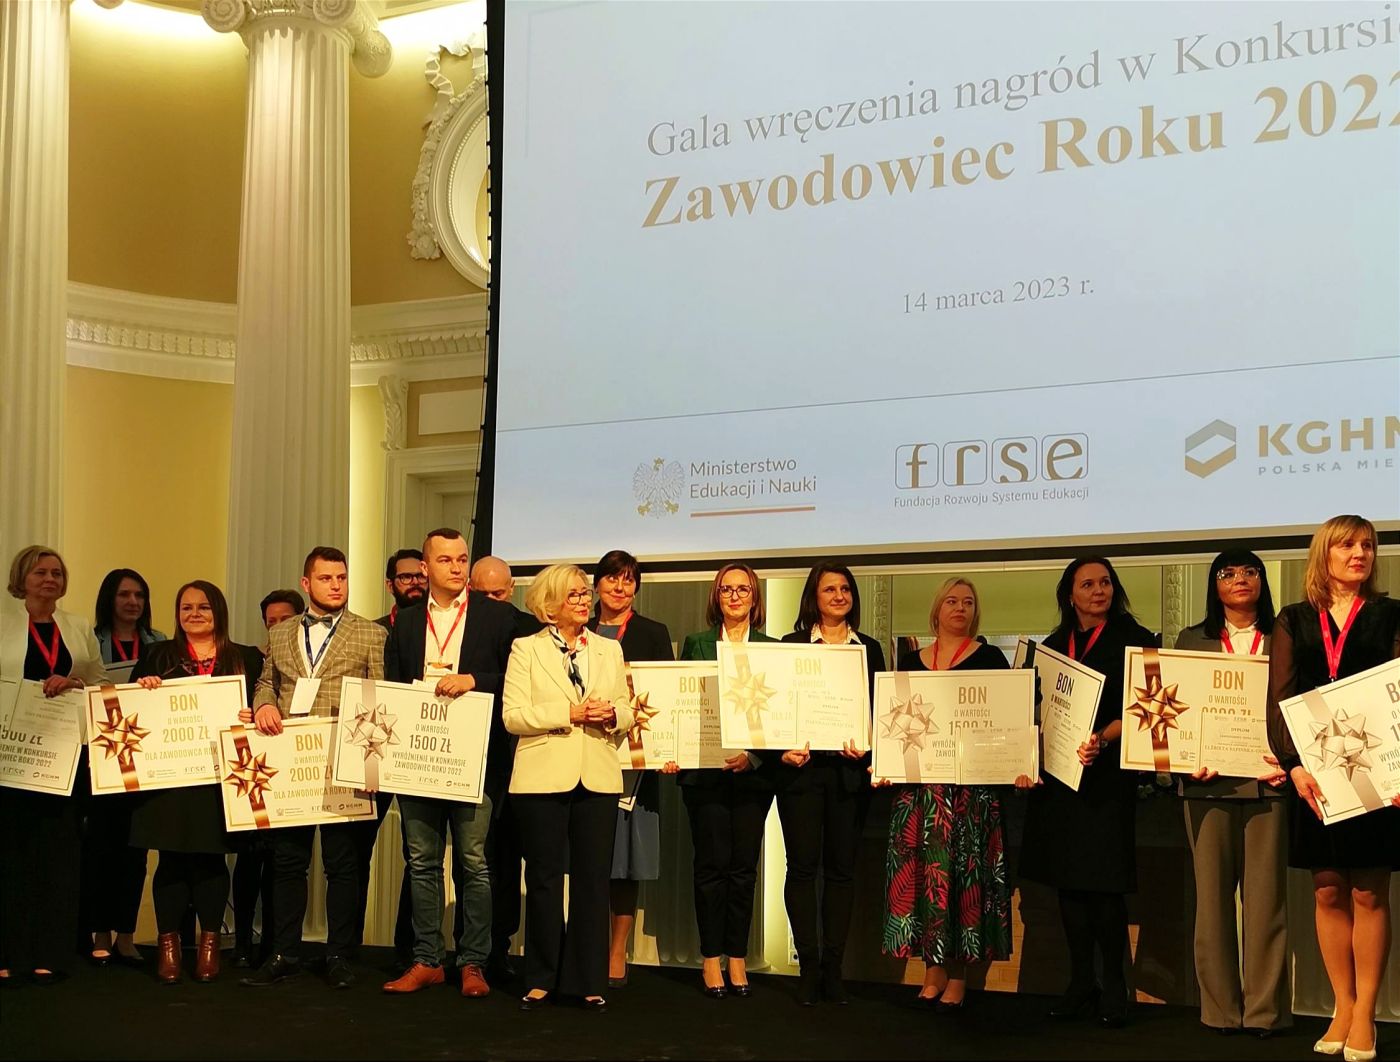 Grupa osób na gali wręczenia nagród w konkursie "Zawodowiec Roku 2022".